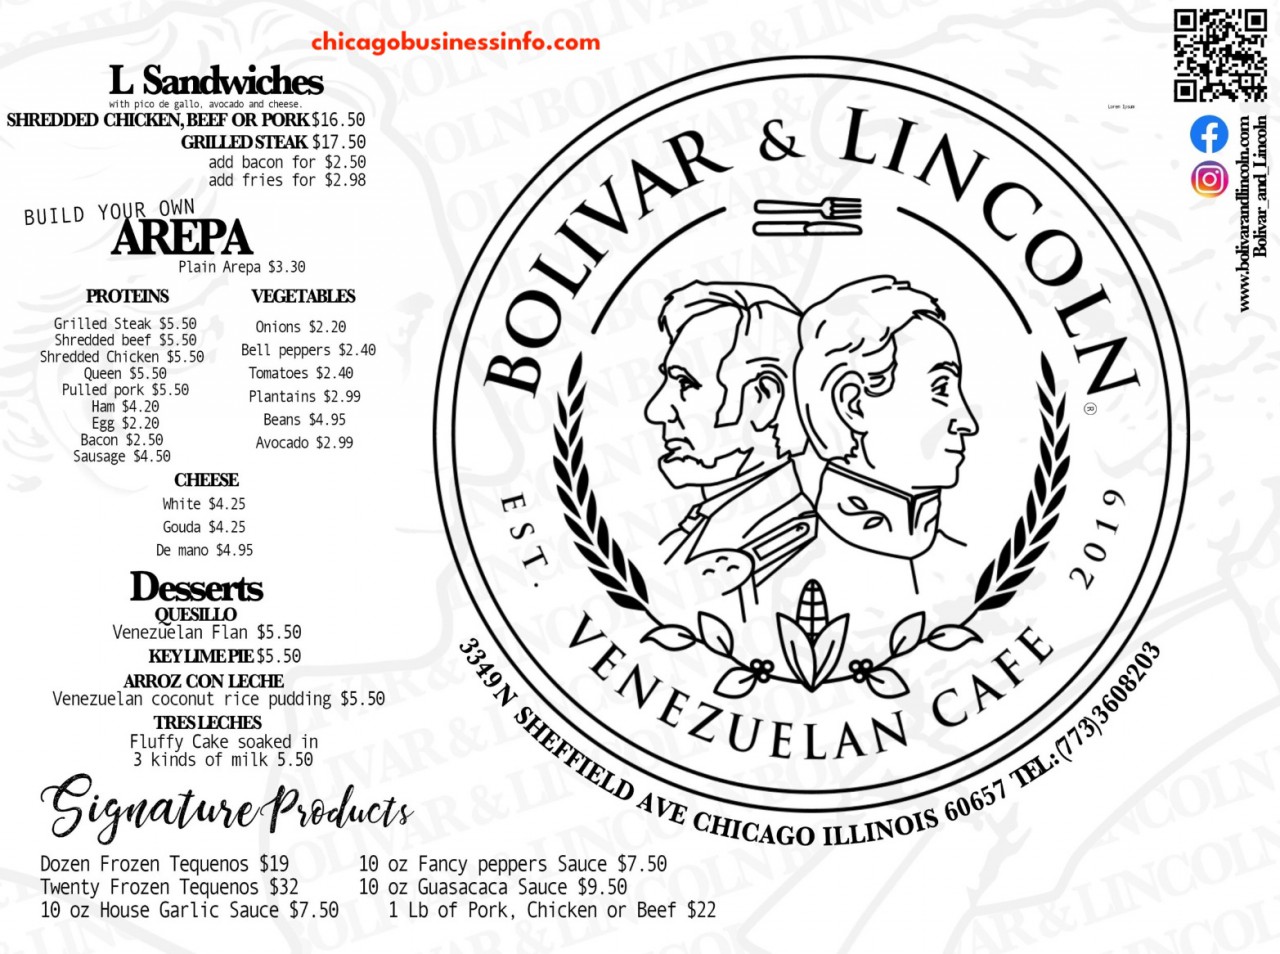 Bolivar and lincoln chicago menu 2